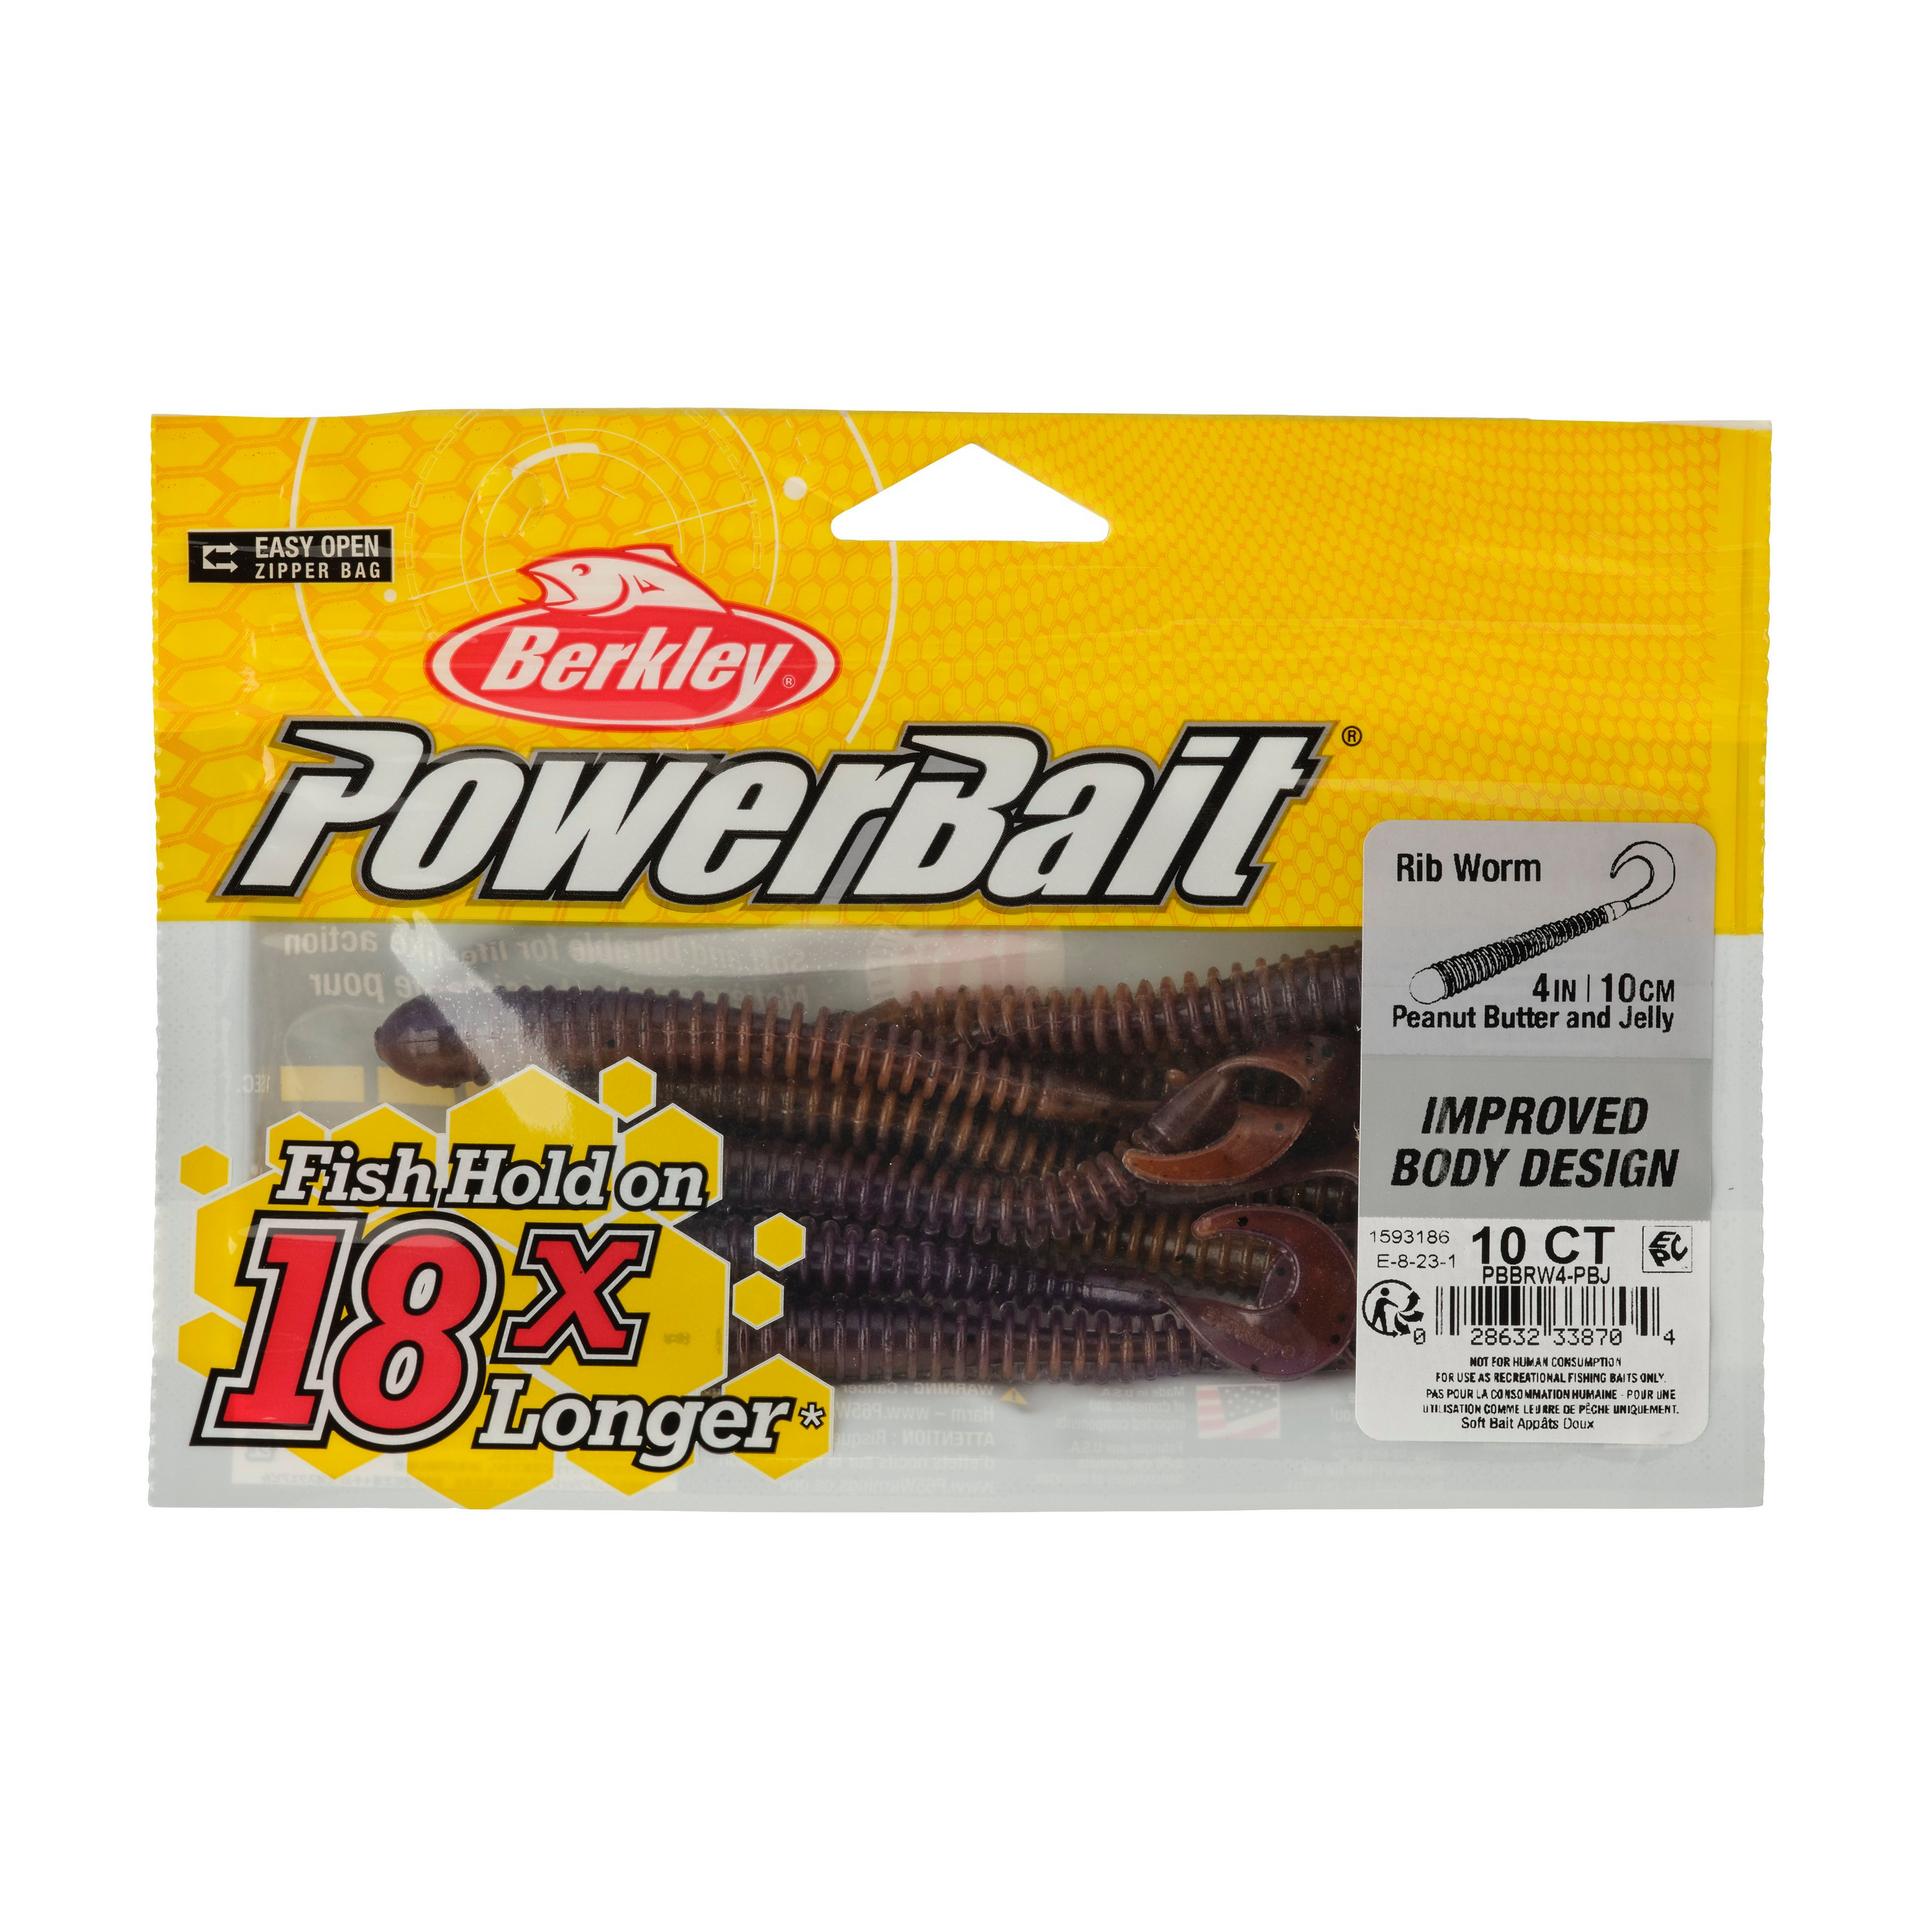 Berkley PowerBaitRibWorm PeanutButterandJelly 4in PKG | Berkley Fishing